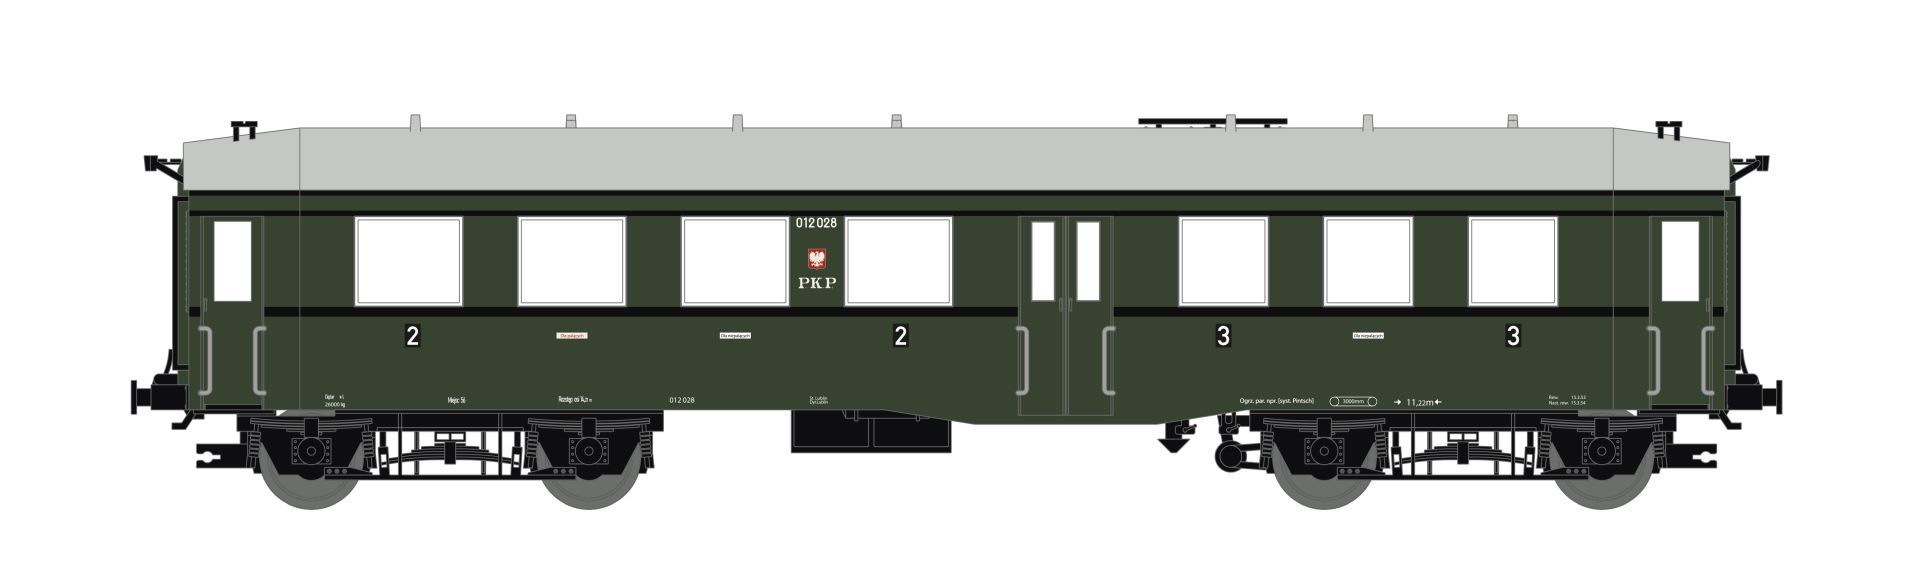 Saxonia 120056 - Personenwagen Bauart 'Altenberg', ex. BC4i, PKP, Ep.III